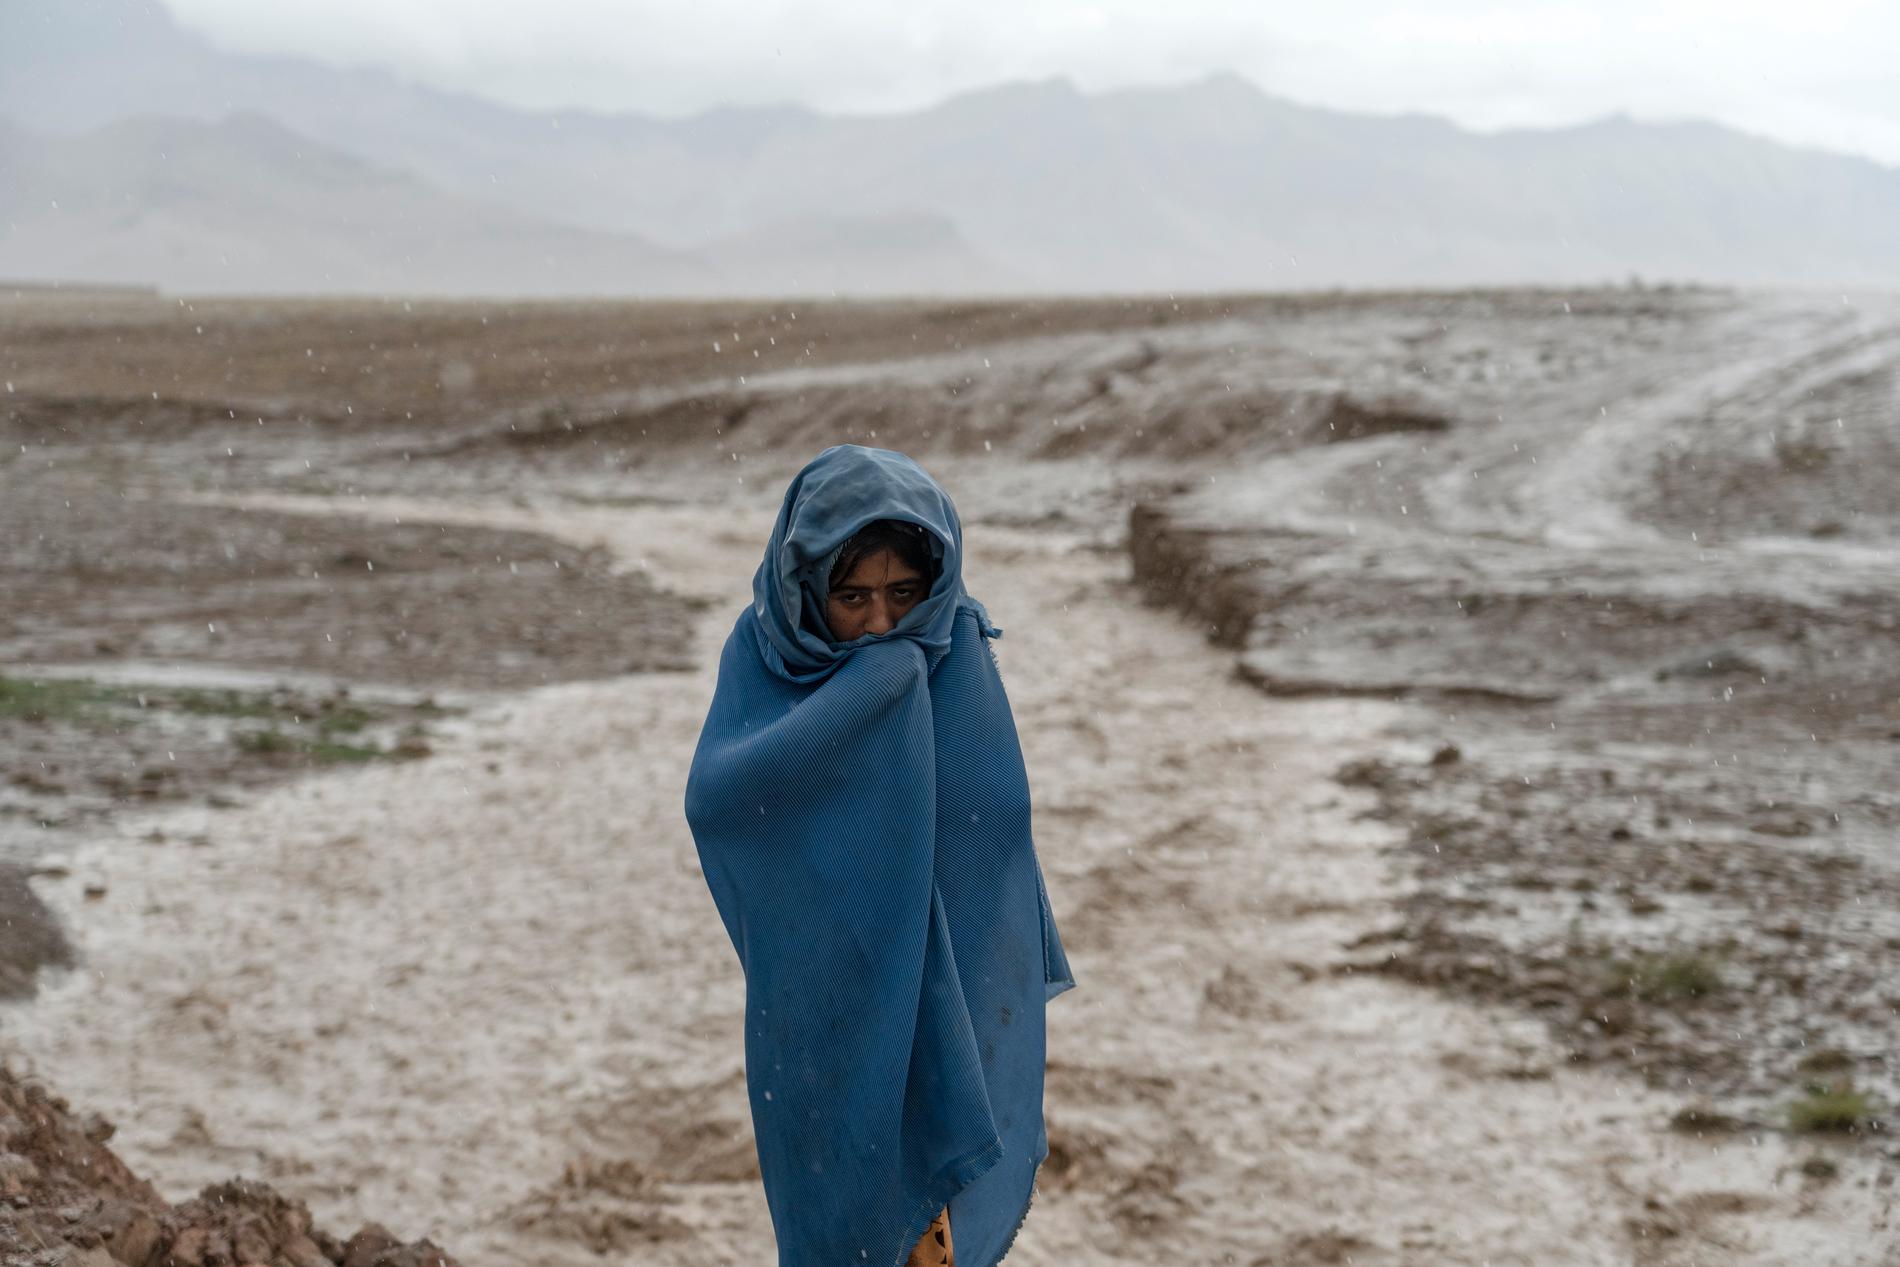 En nioårig afghansk flicka som arbetar på en tegelfabrik i huvudstaden Kabuls utkanter. Enligt biståndsorganisationer har antalet barnarbetare i landet ökat kraftigt sedan talibanerna kom till makten 2021.